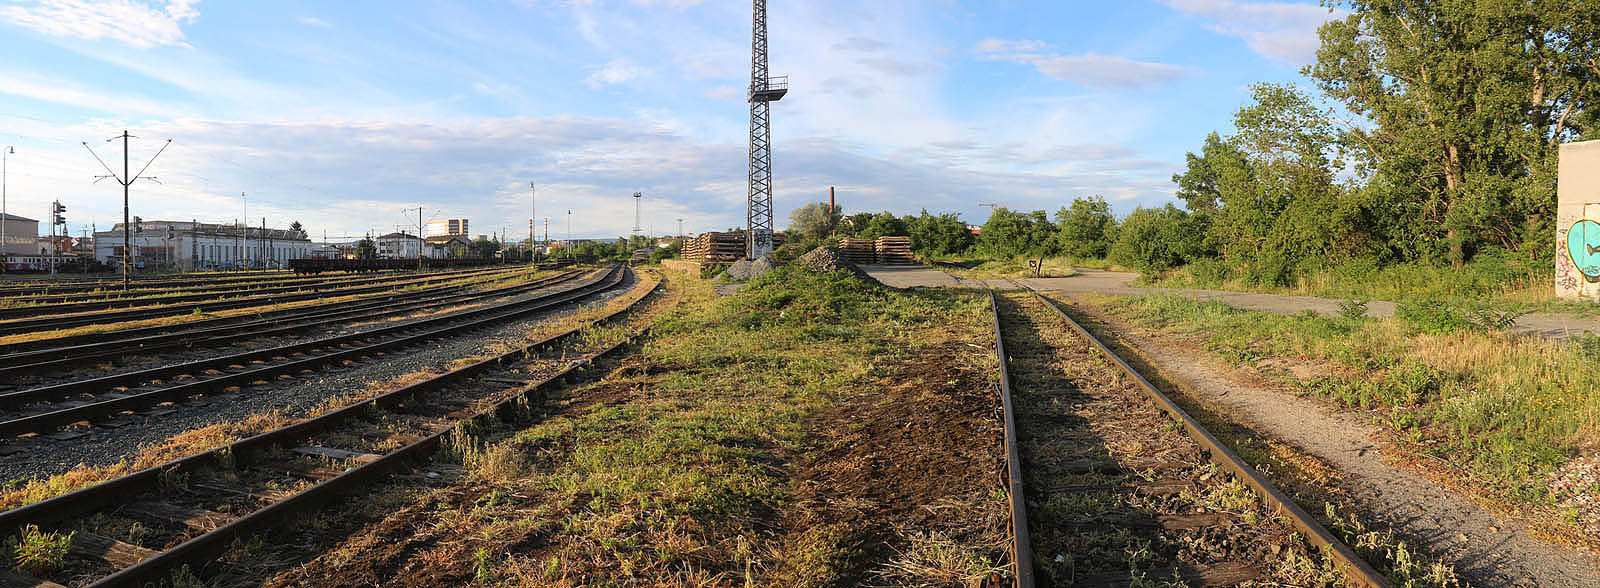 Pláň romanticky tajemné stanice Brno dolní nádraží vlevo, její kolej č. 38 vpravo a místo (před přejezdem v pravé horní části snímku), kde odbočovala vlečka do komárovských skladů. Tak vypadá opuštěné kolejiště v roce 2017.